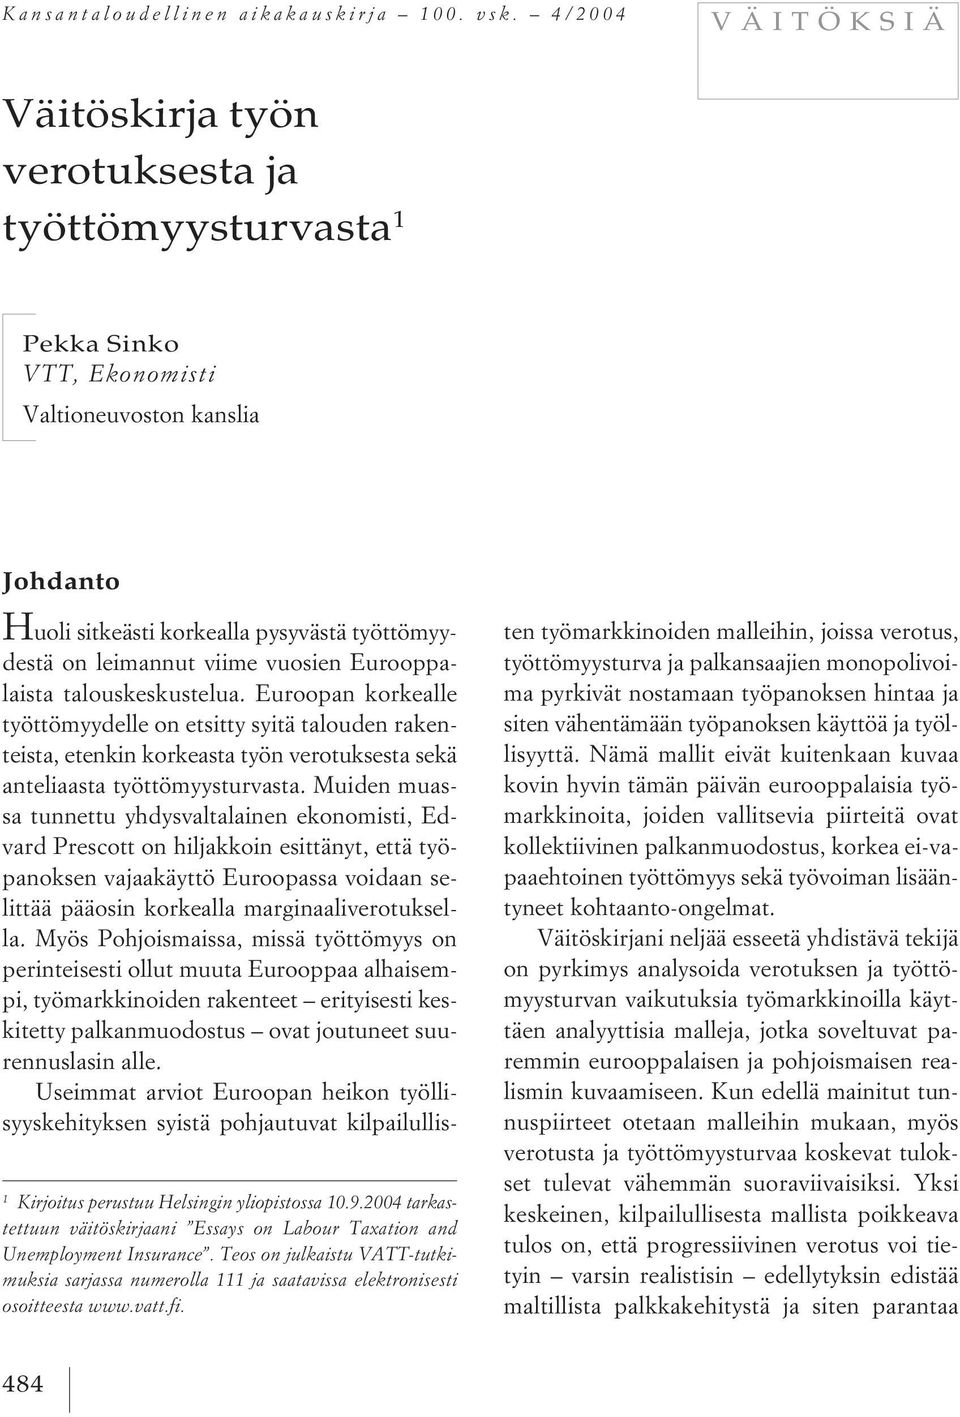 2004 tarkastettuun väitöskirjaani Essays on Labour Taxation and Unemployment Insurance. Teos on julkaistu VATT-tutkimuksia sarjassa numerolla 111 ja saatavissa elektronisesti osoitteesta www.vatt.fi.